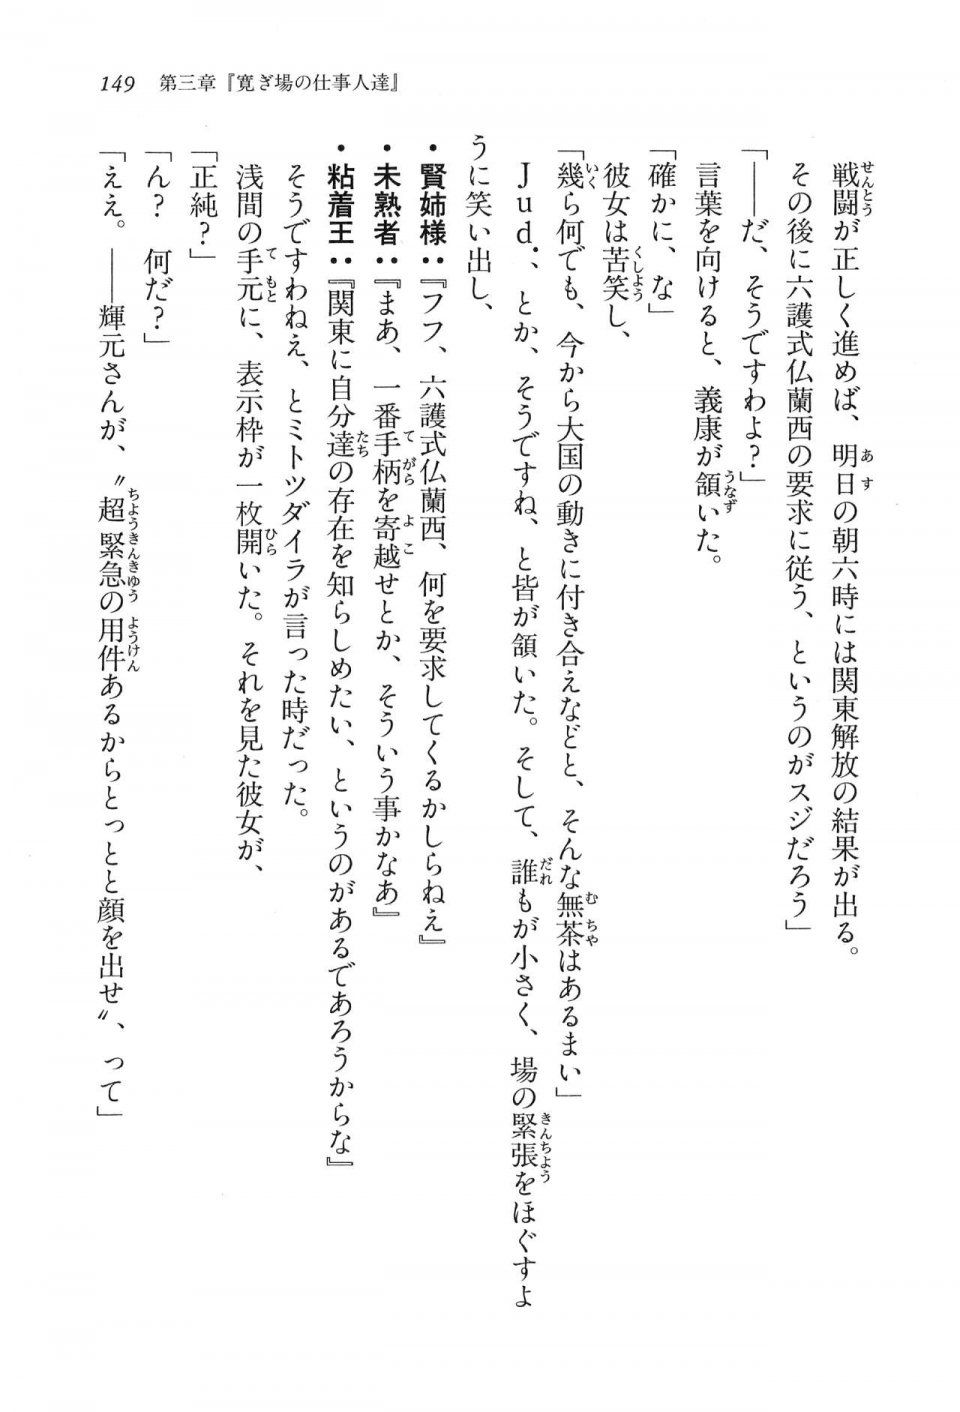 Kyoukai Senjou no Horizon LN Vol 16(7A) - Photo #149